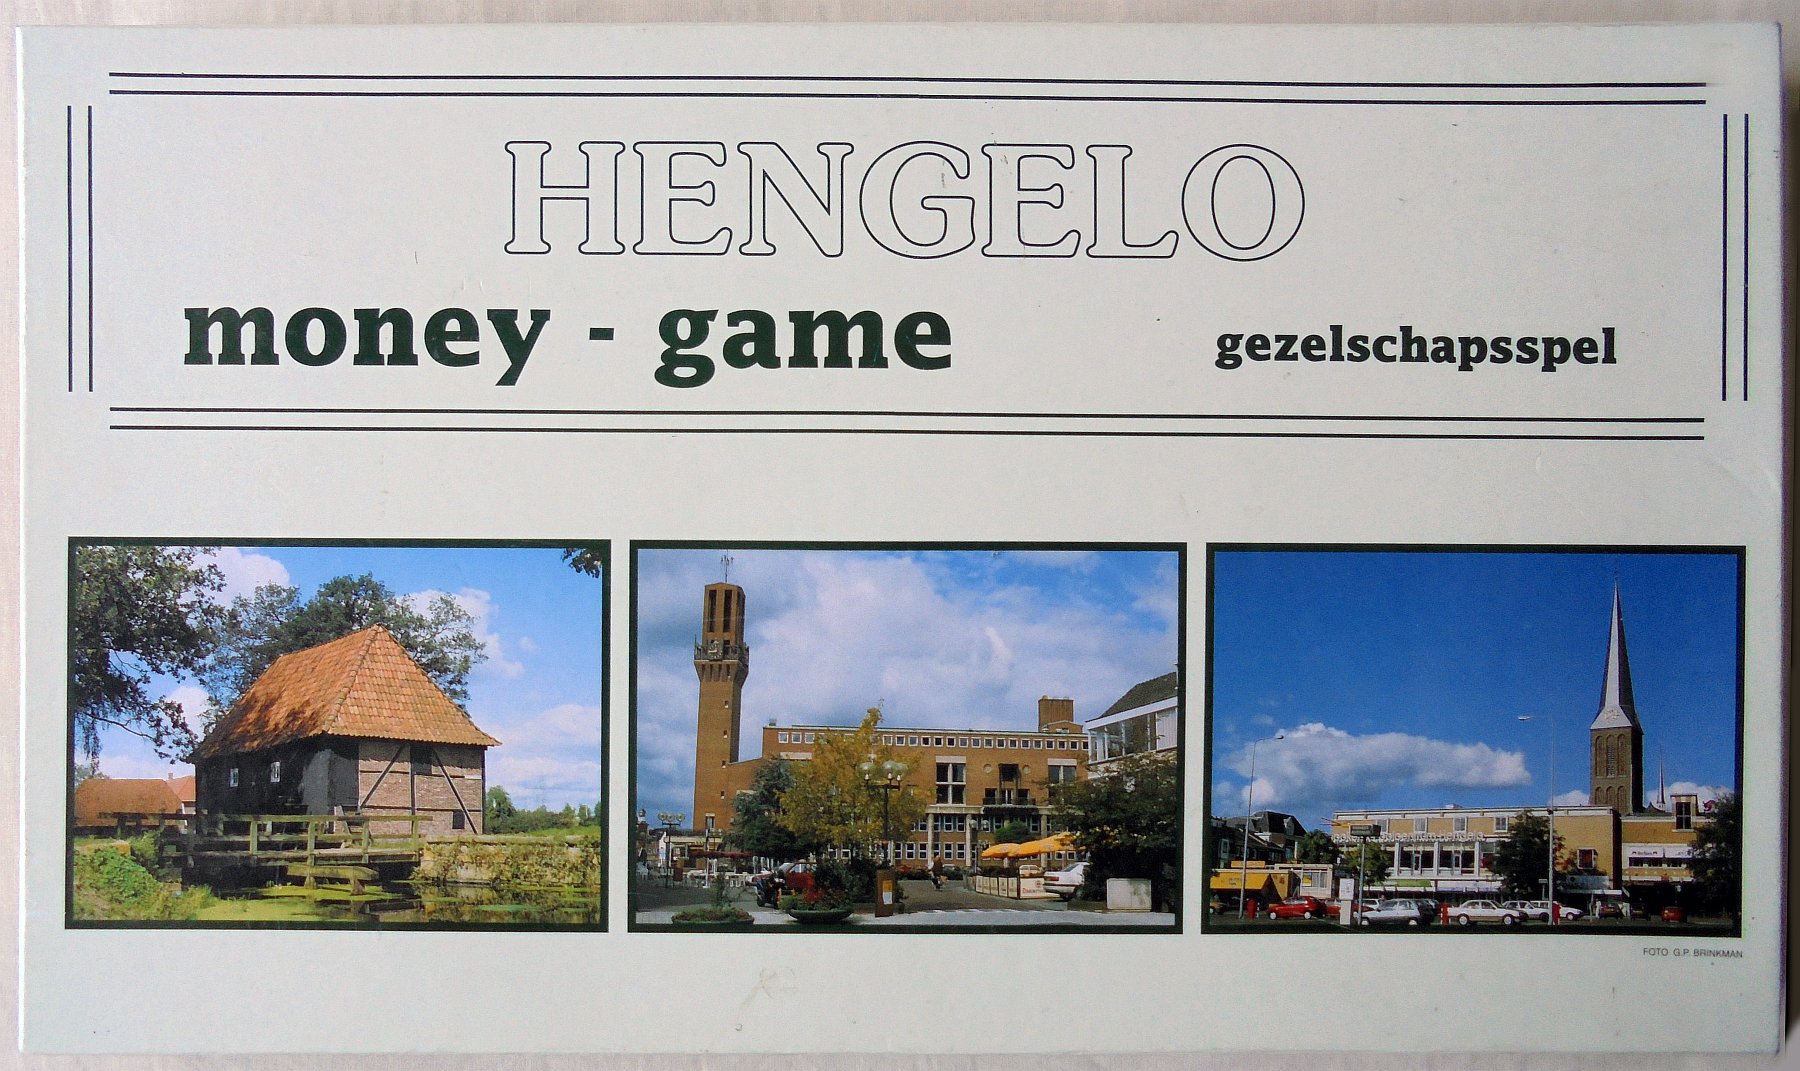 Money Game Hengelo